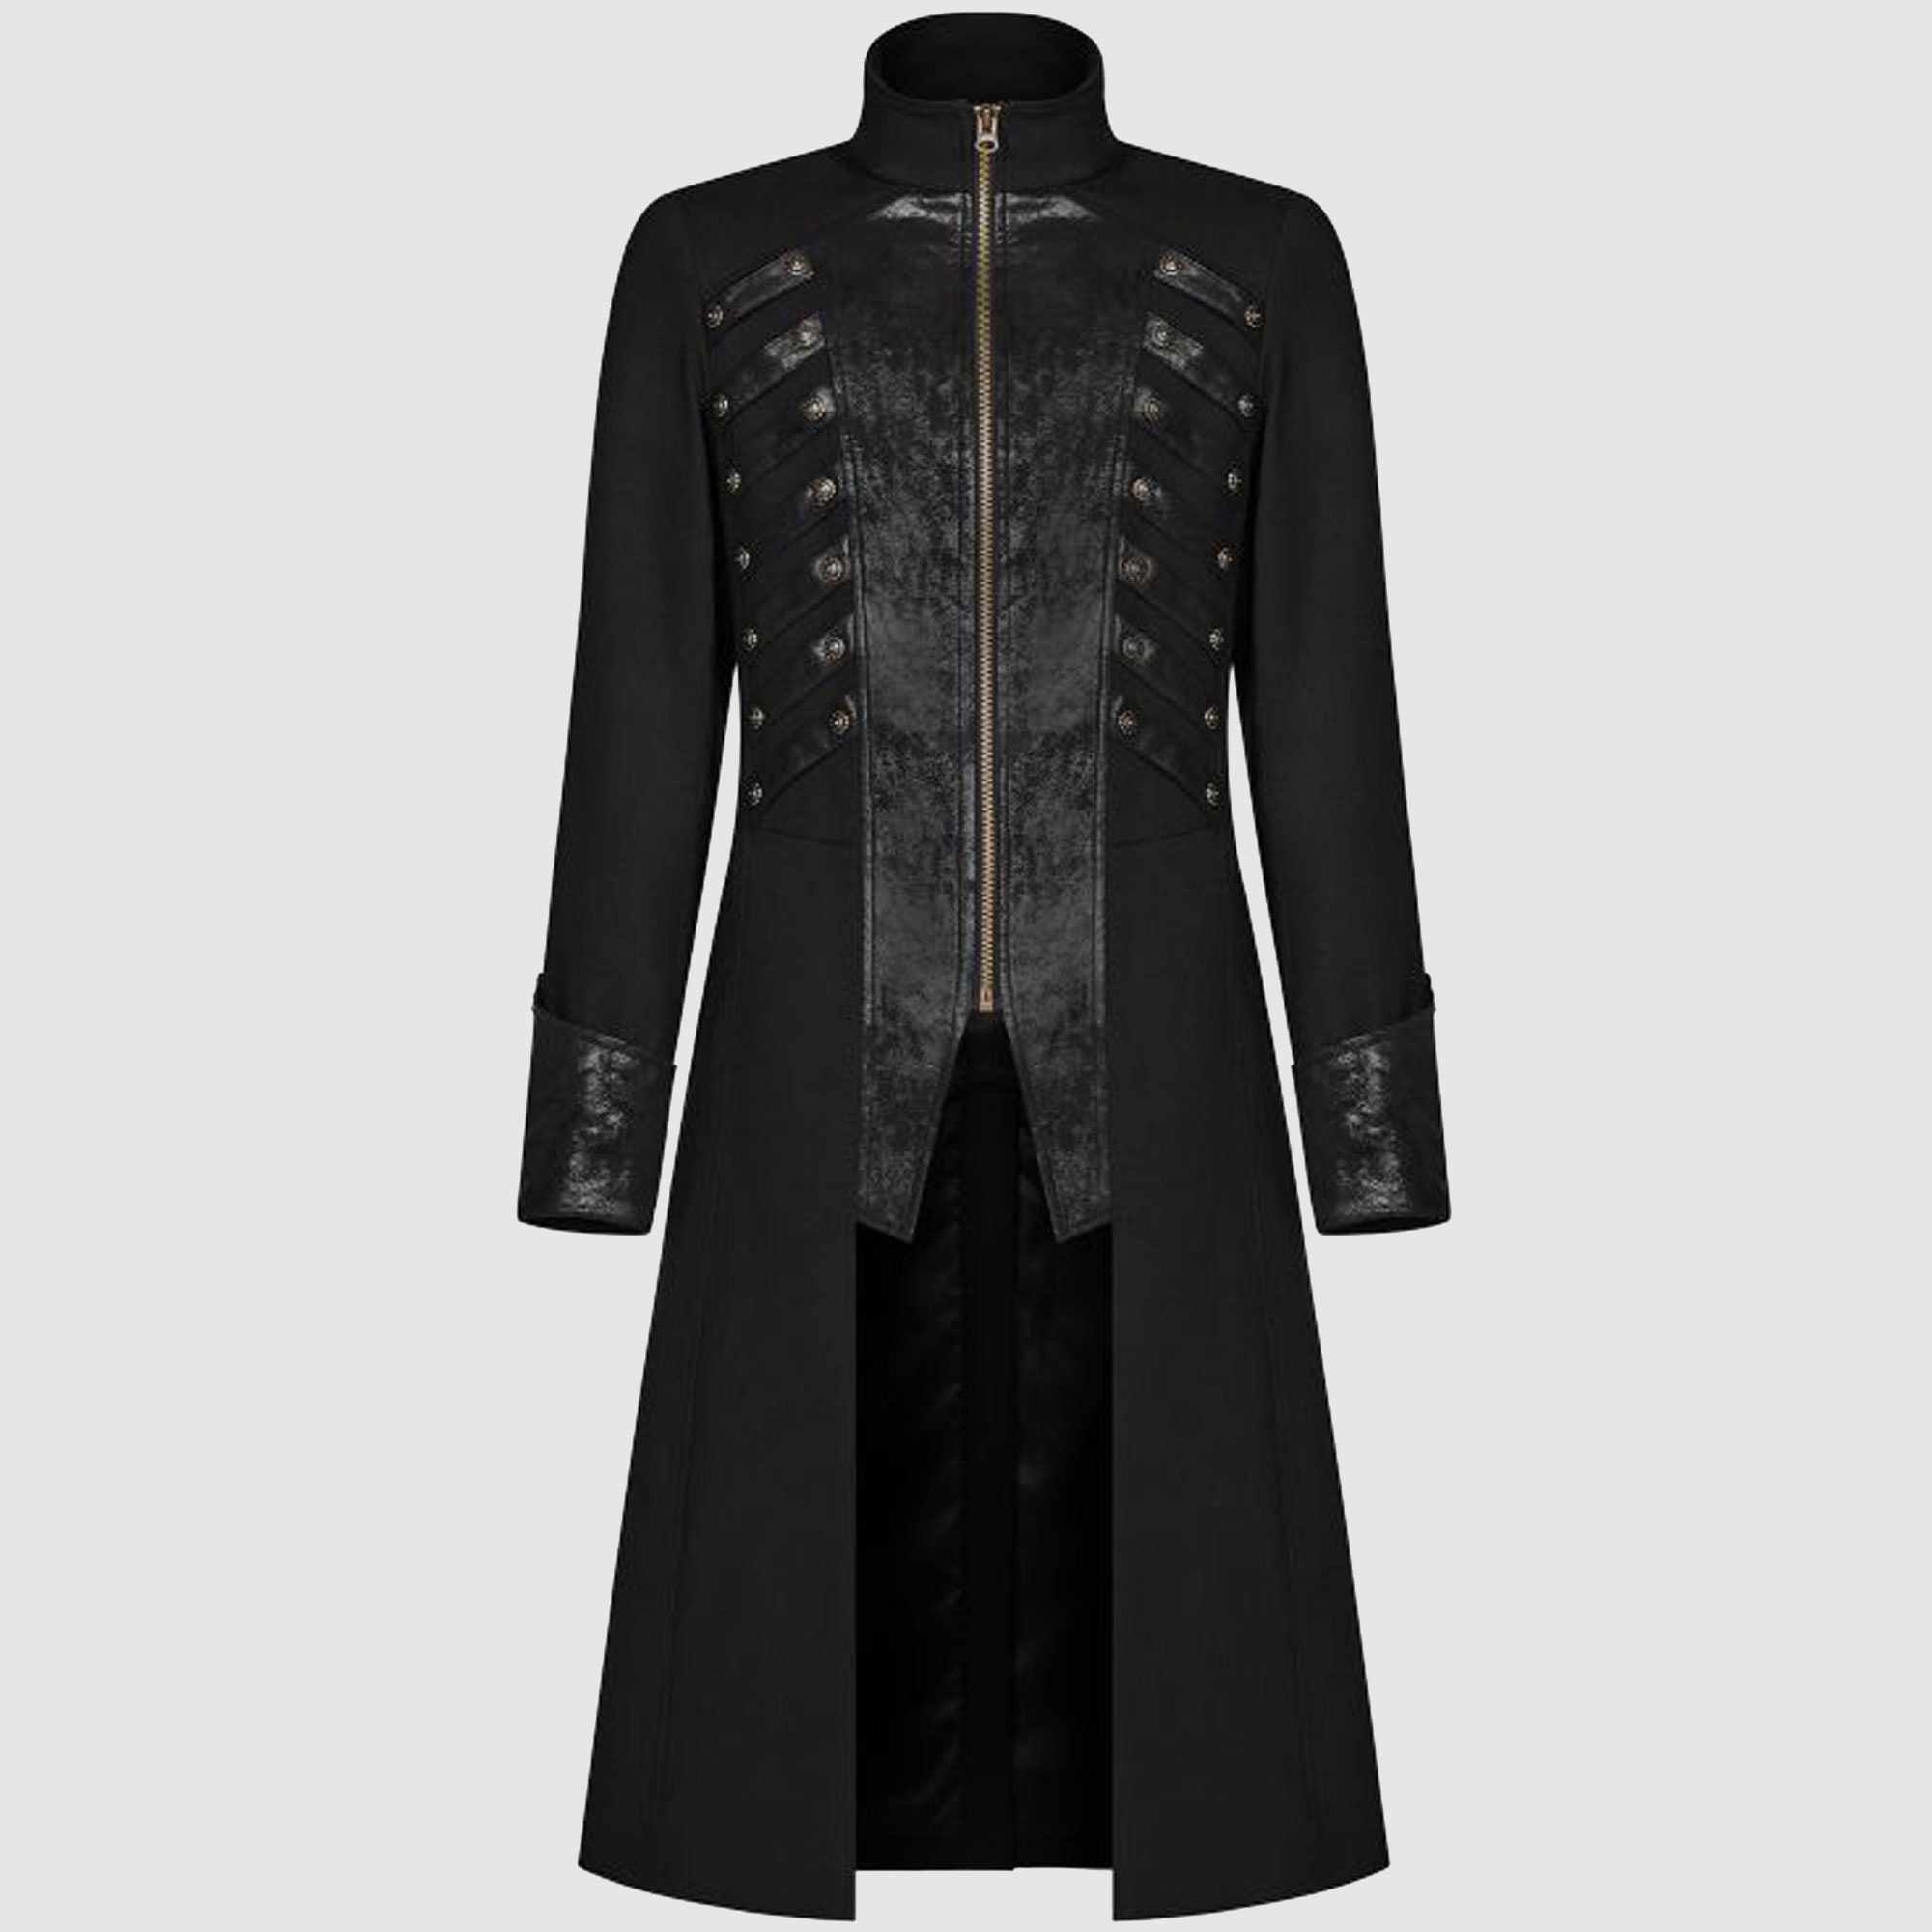 Black Gothic Coat Black Gothic Highwayman Coat Military - Etsy UK